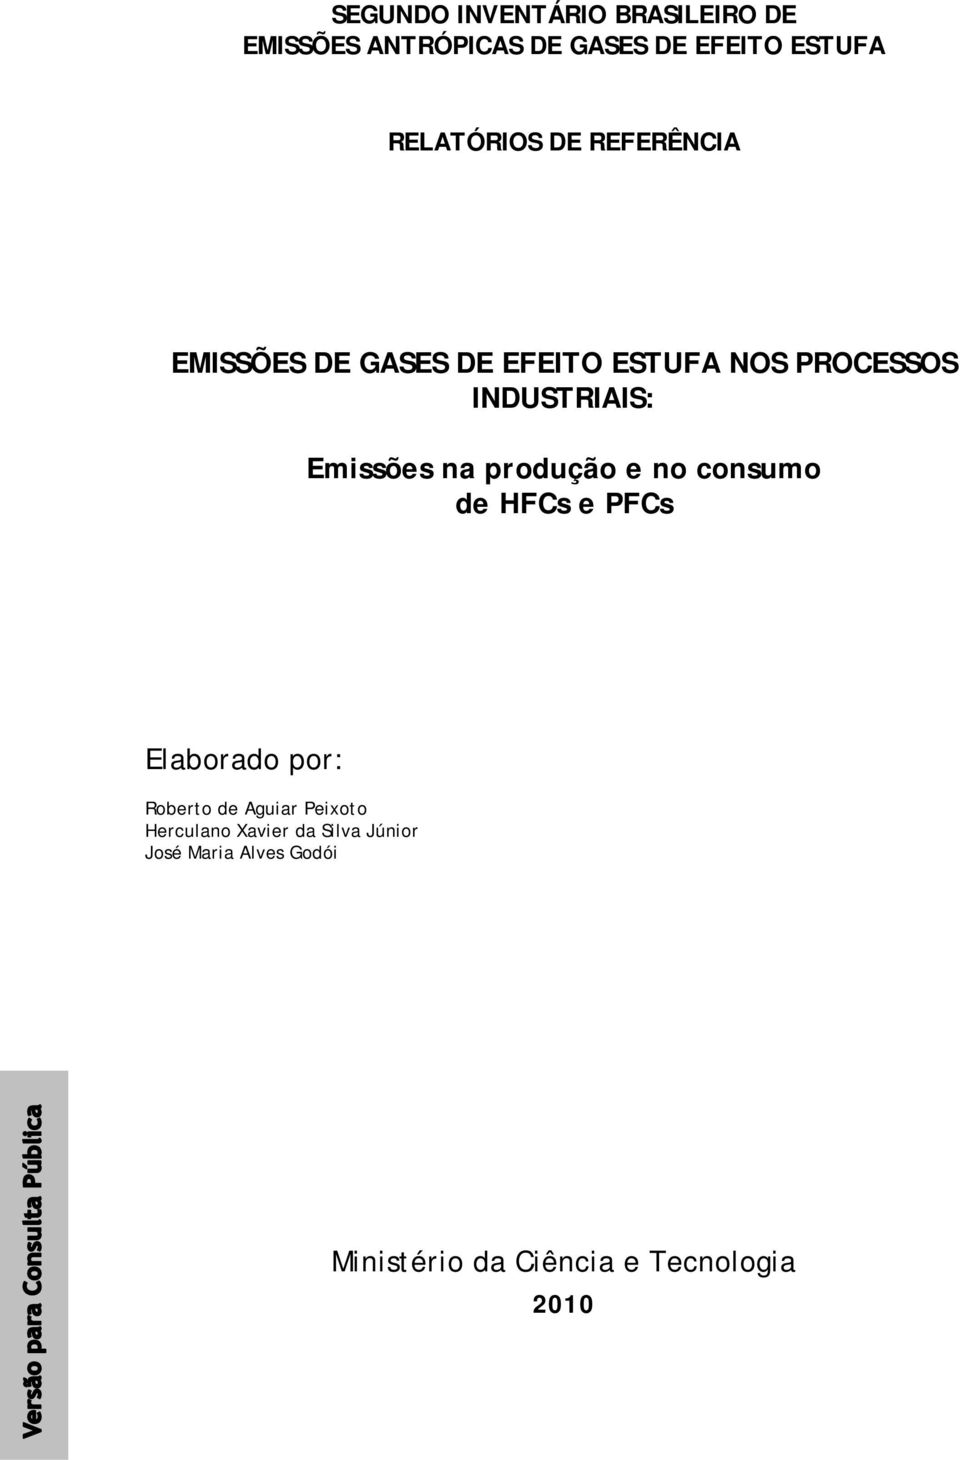 Emissões na produção e no consumo de HFCs e PFCs Elaborado por: Roberto de Aguiar